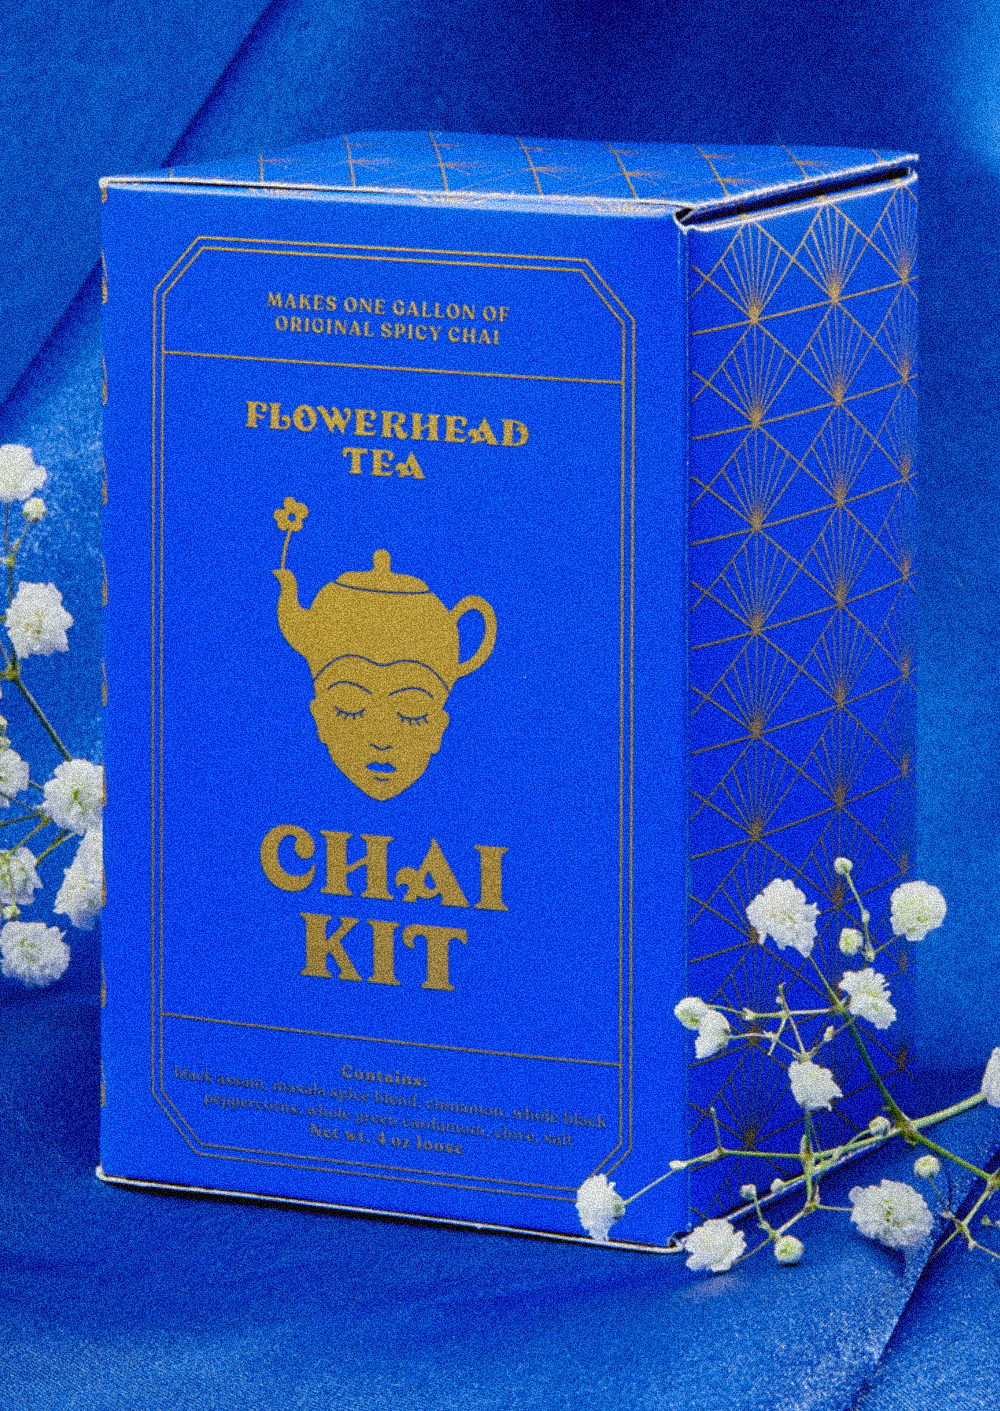 Flowerhead Tea Chai Kit